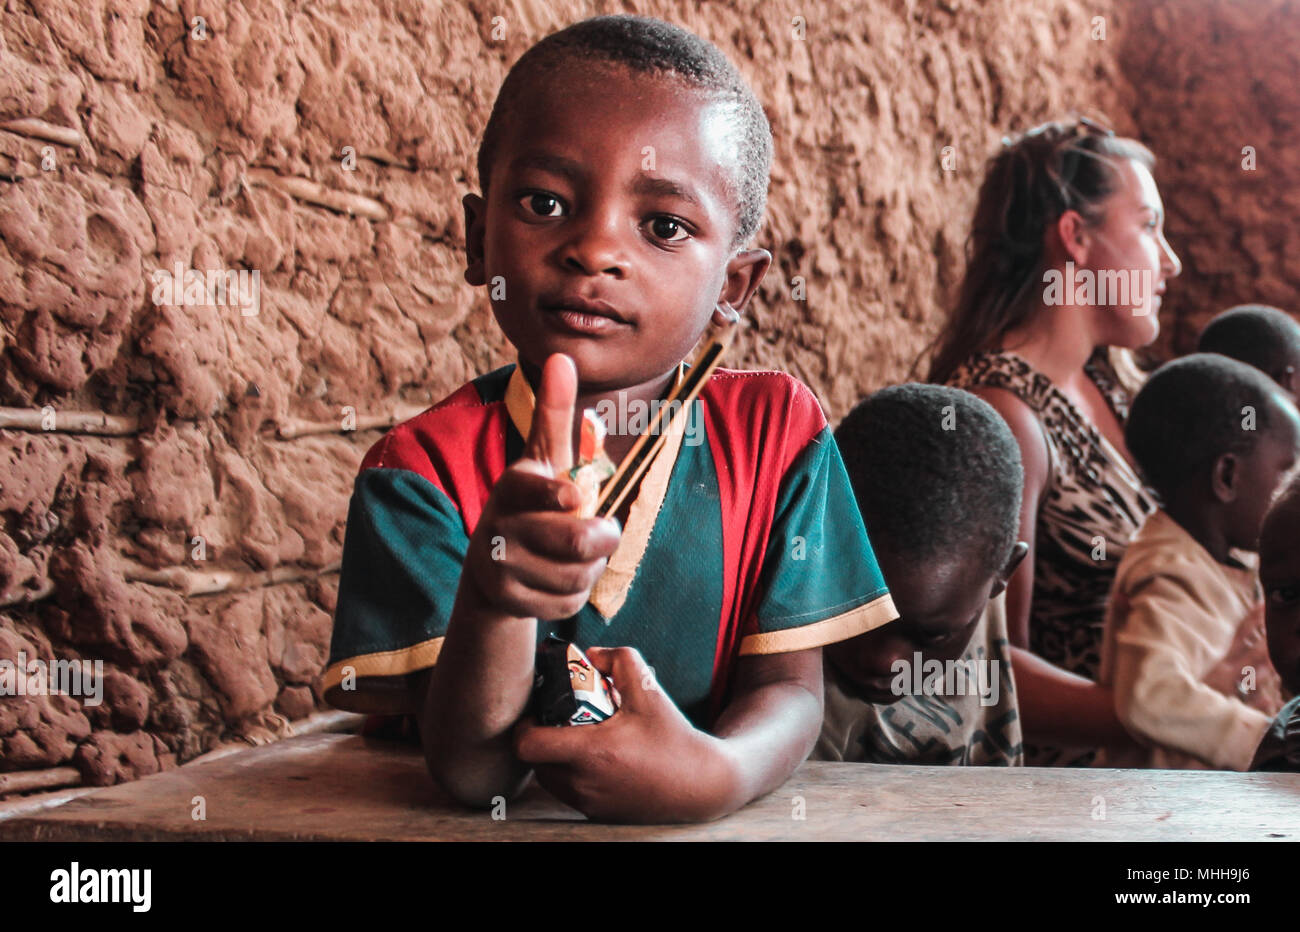 Bebé africanos imita una pistola Foto de stock